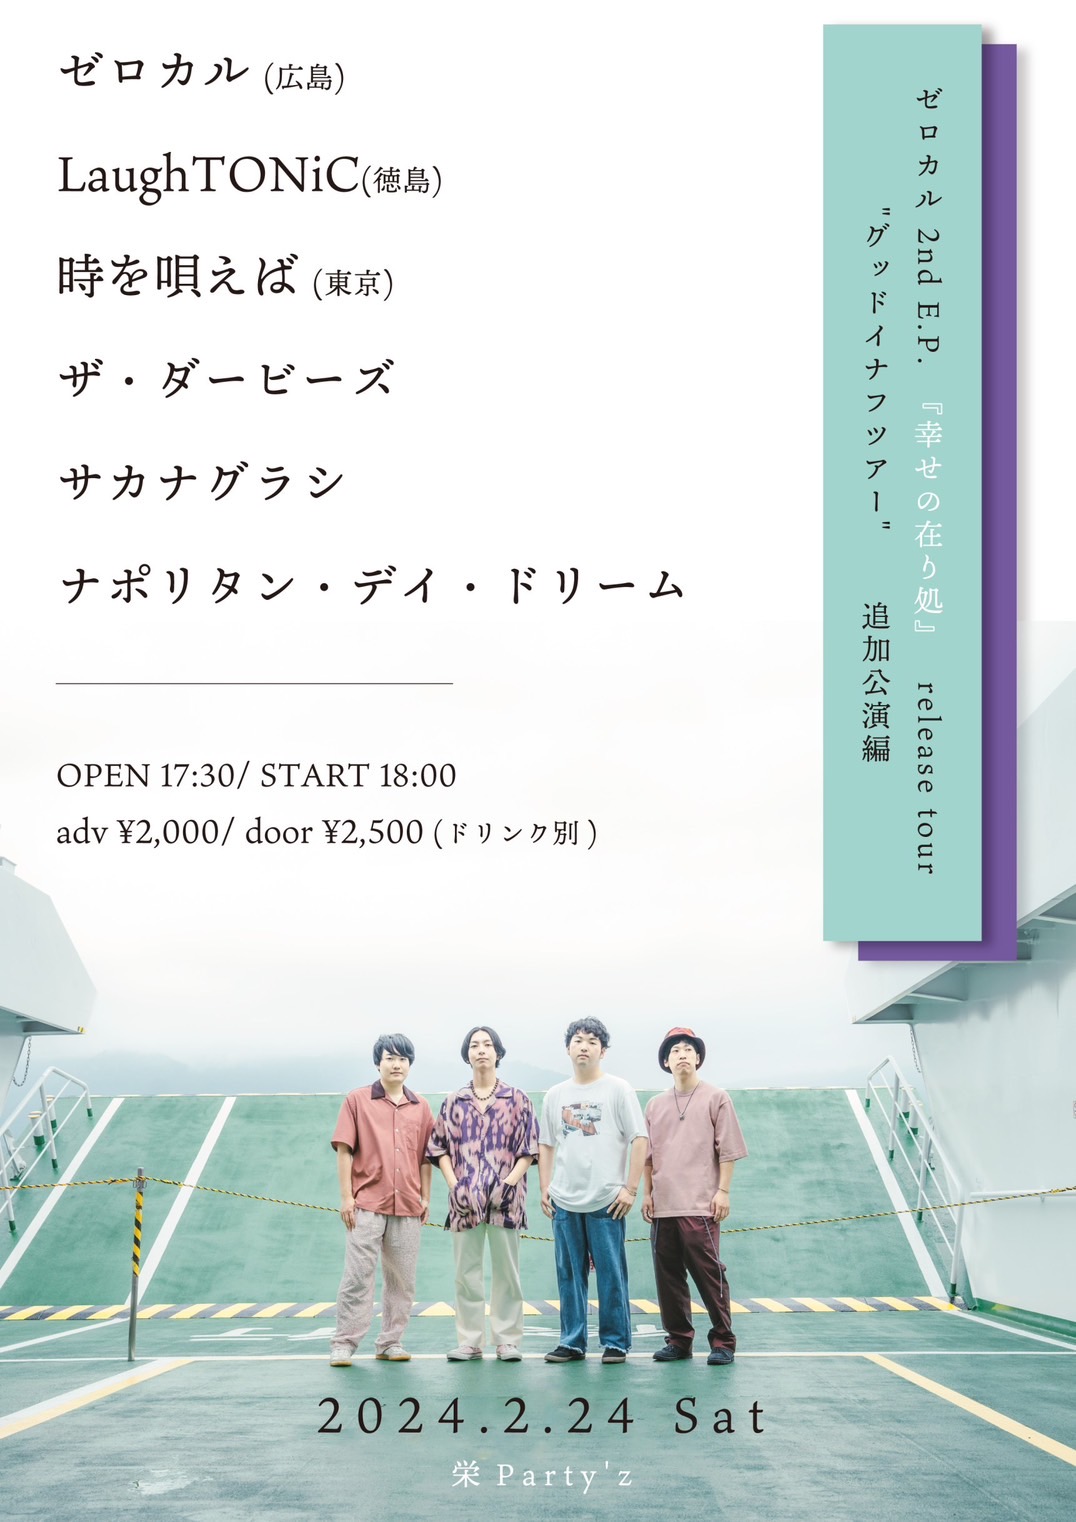 ゼロカル 2nd E.P. 『幸せの在り処』 release tour " グッドイナフツアー " 追加公演編